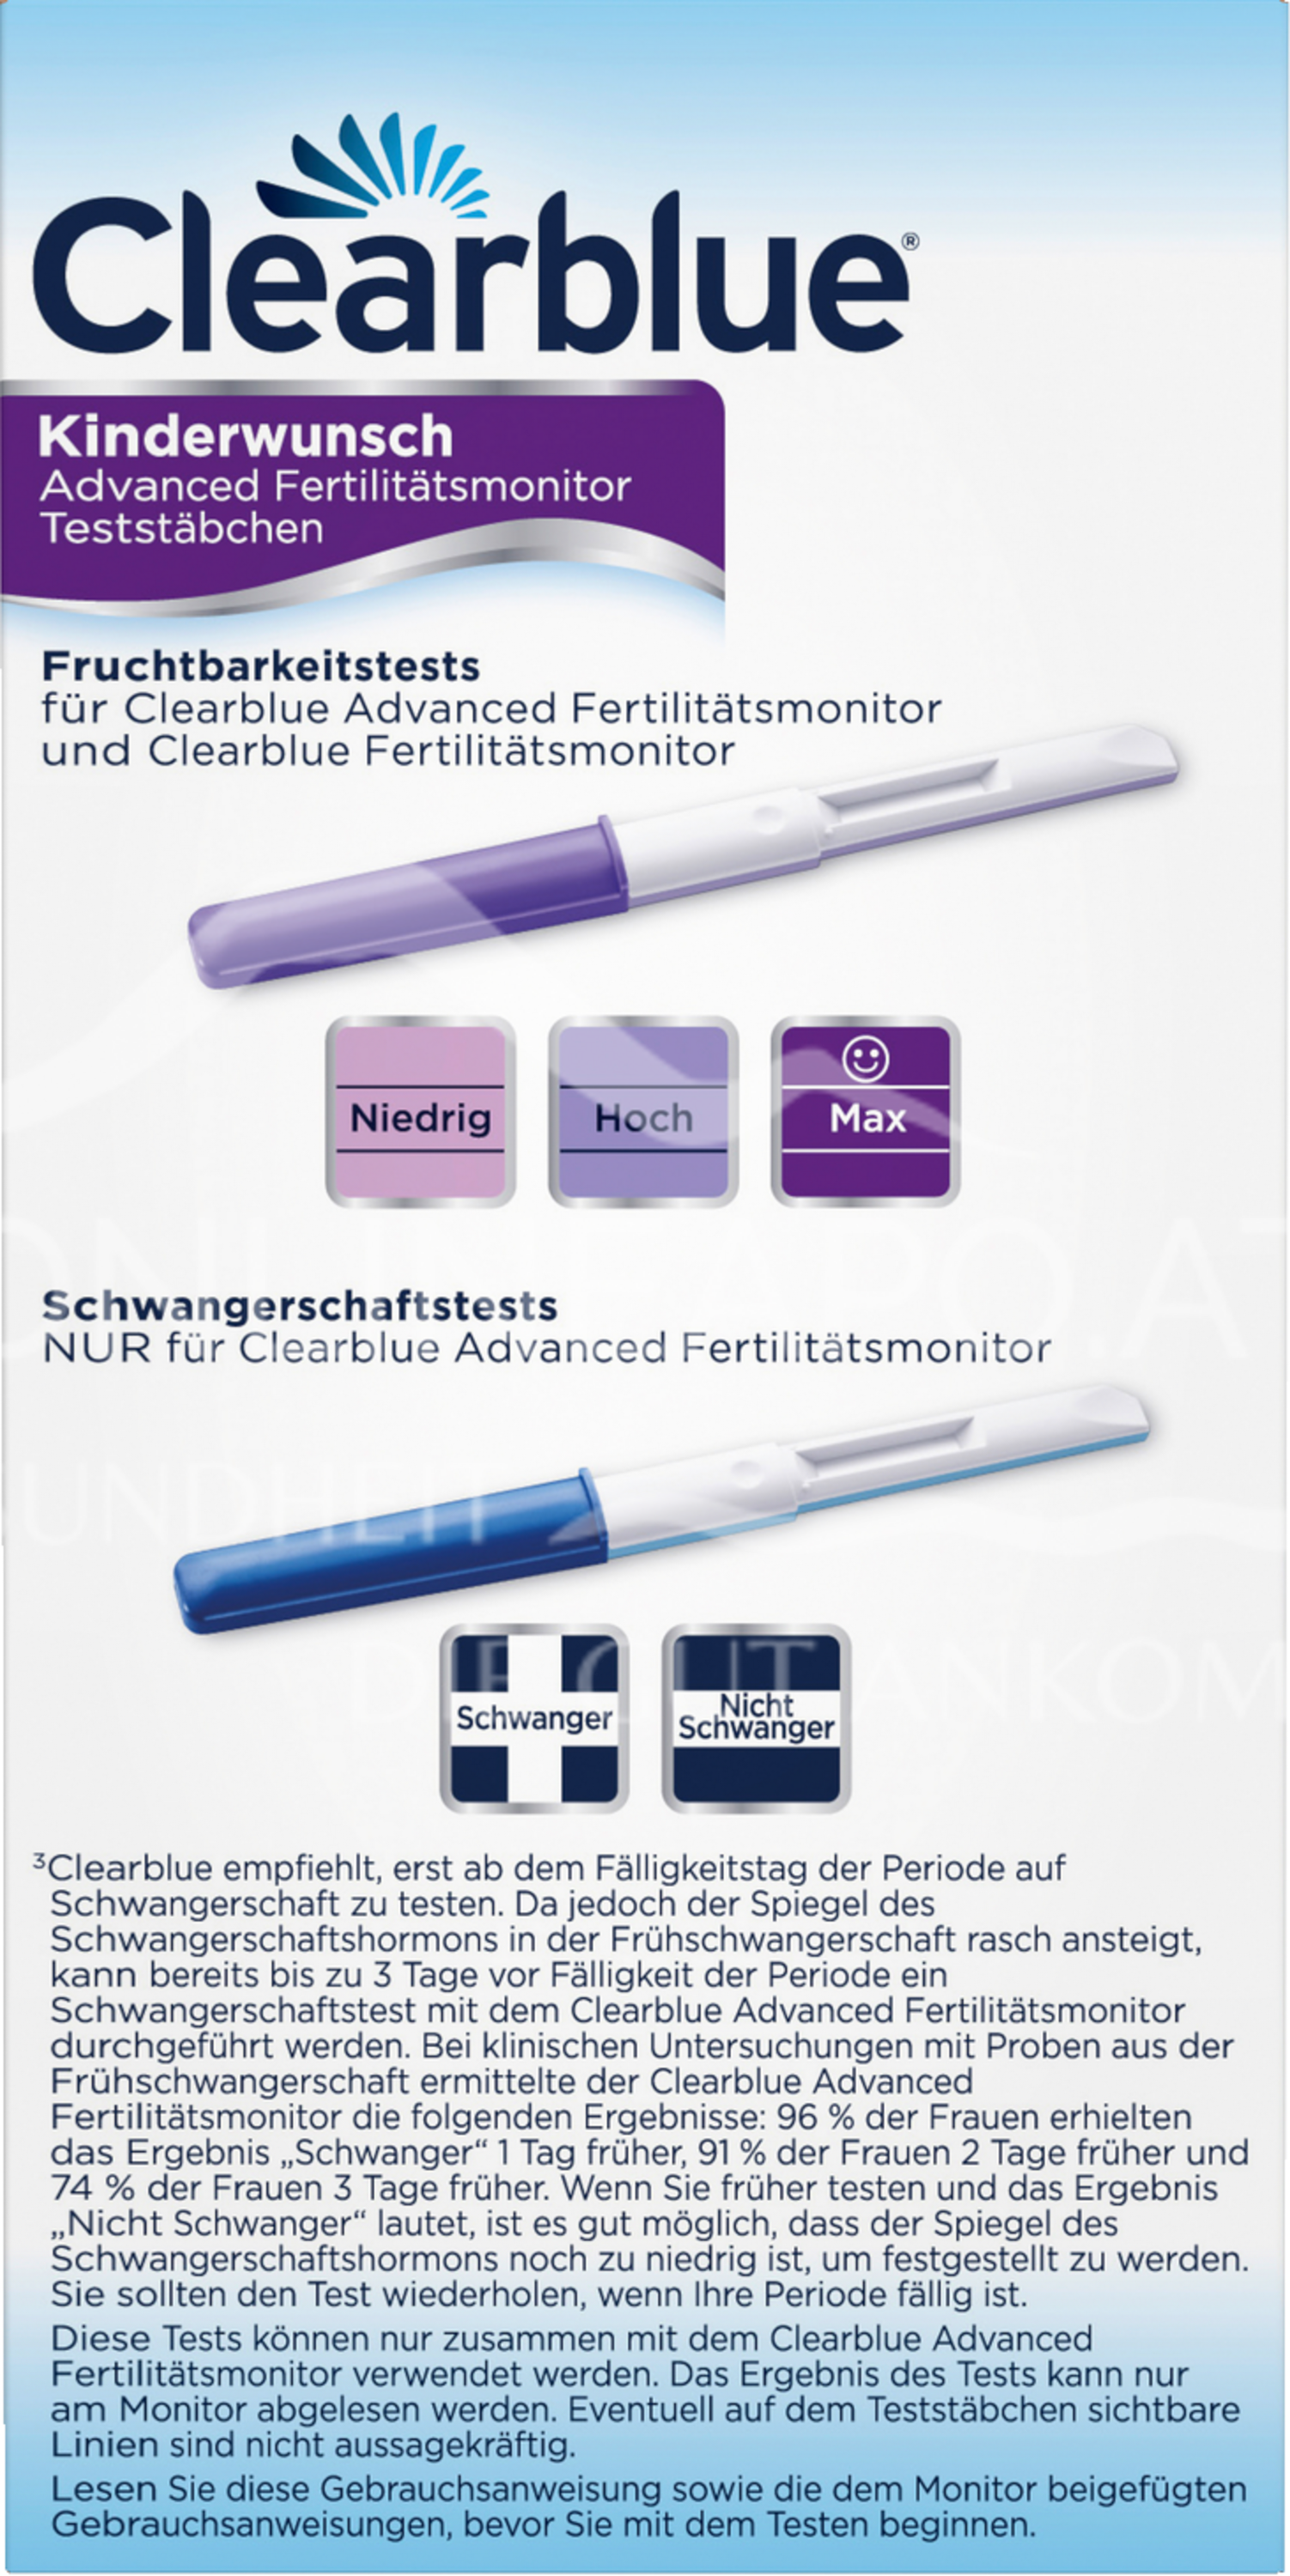 Clearblue Kinderwunsch Advanced Fertilitätsmonitor Teststäbchen